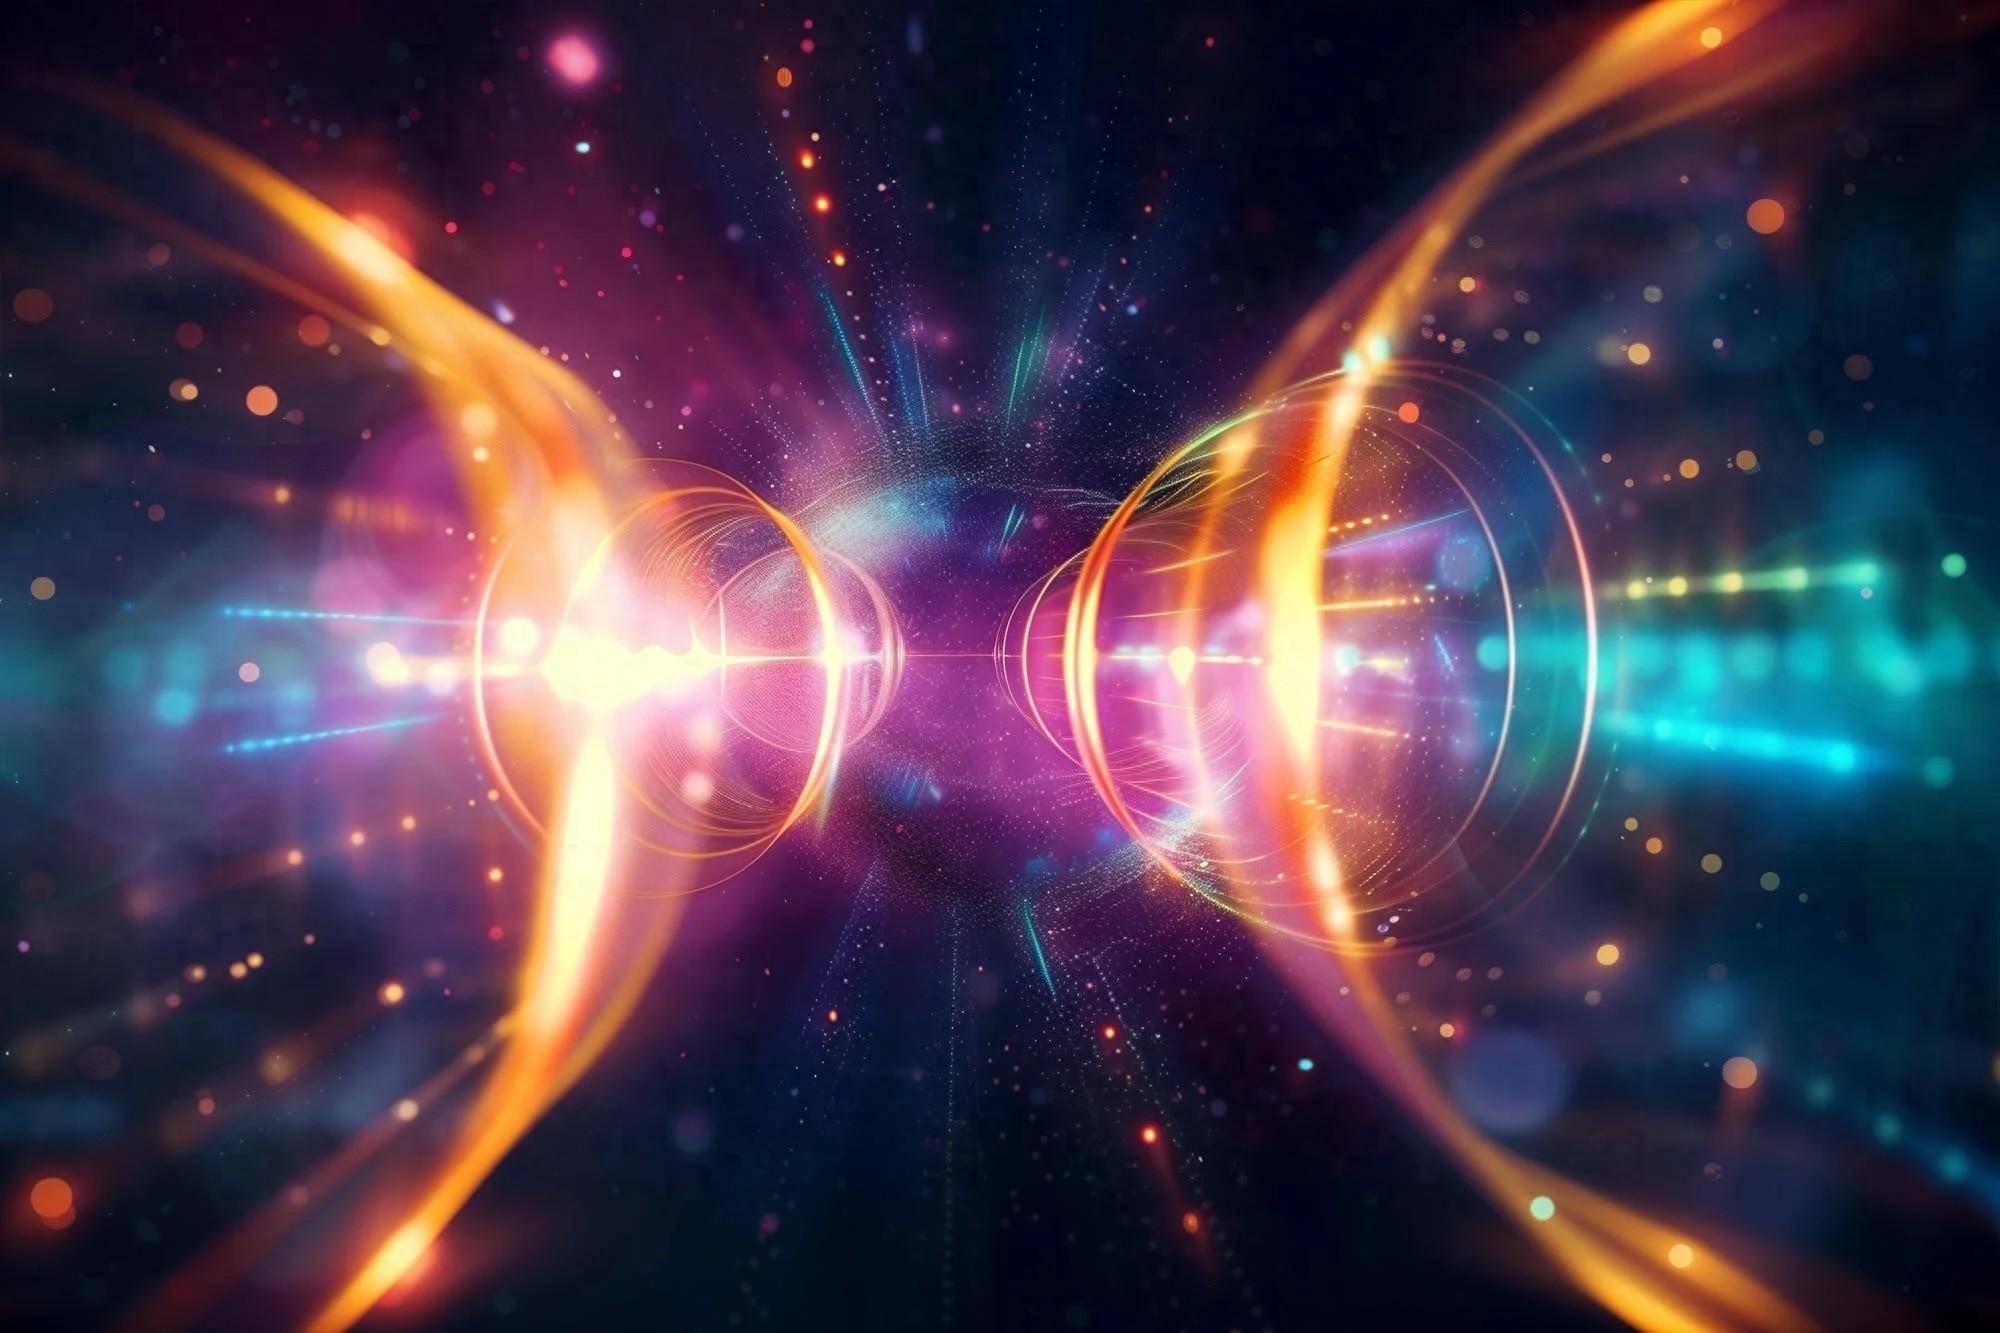 量子隐形传态刚刚成为现实:在噪音中实现90%保真度